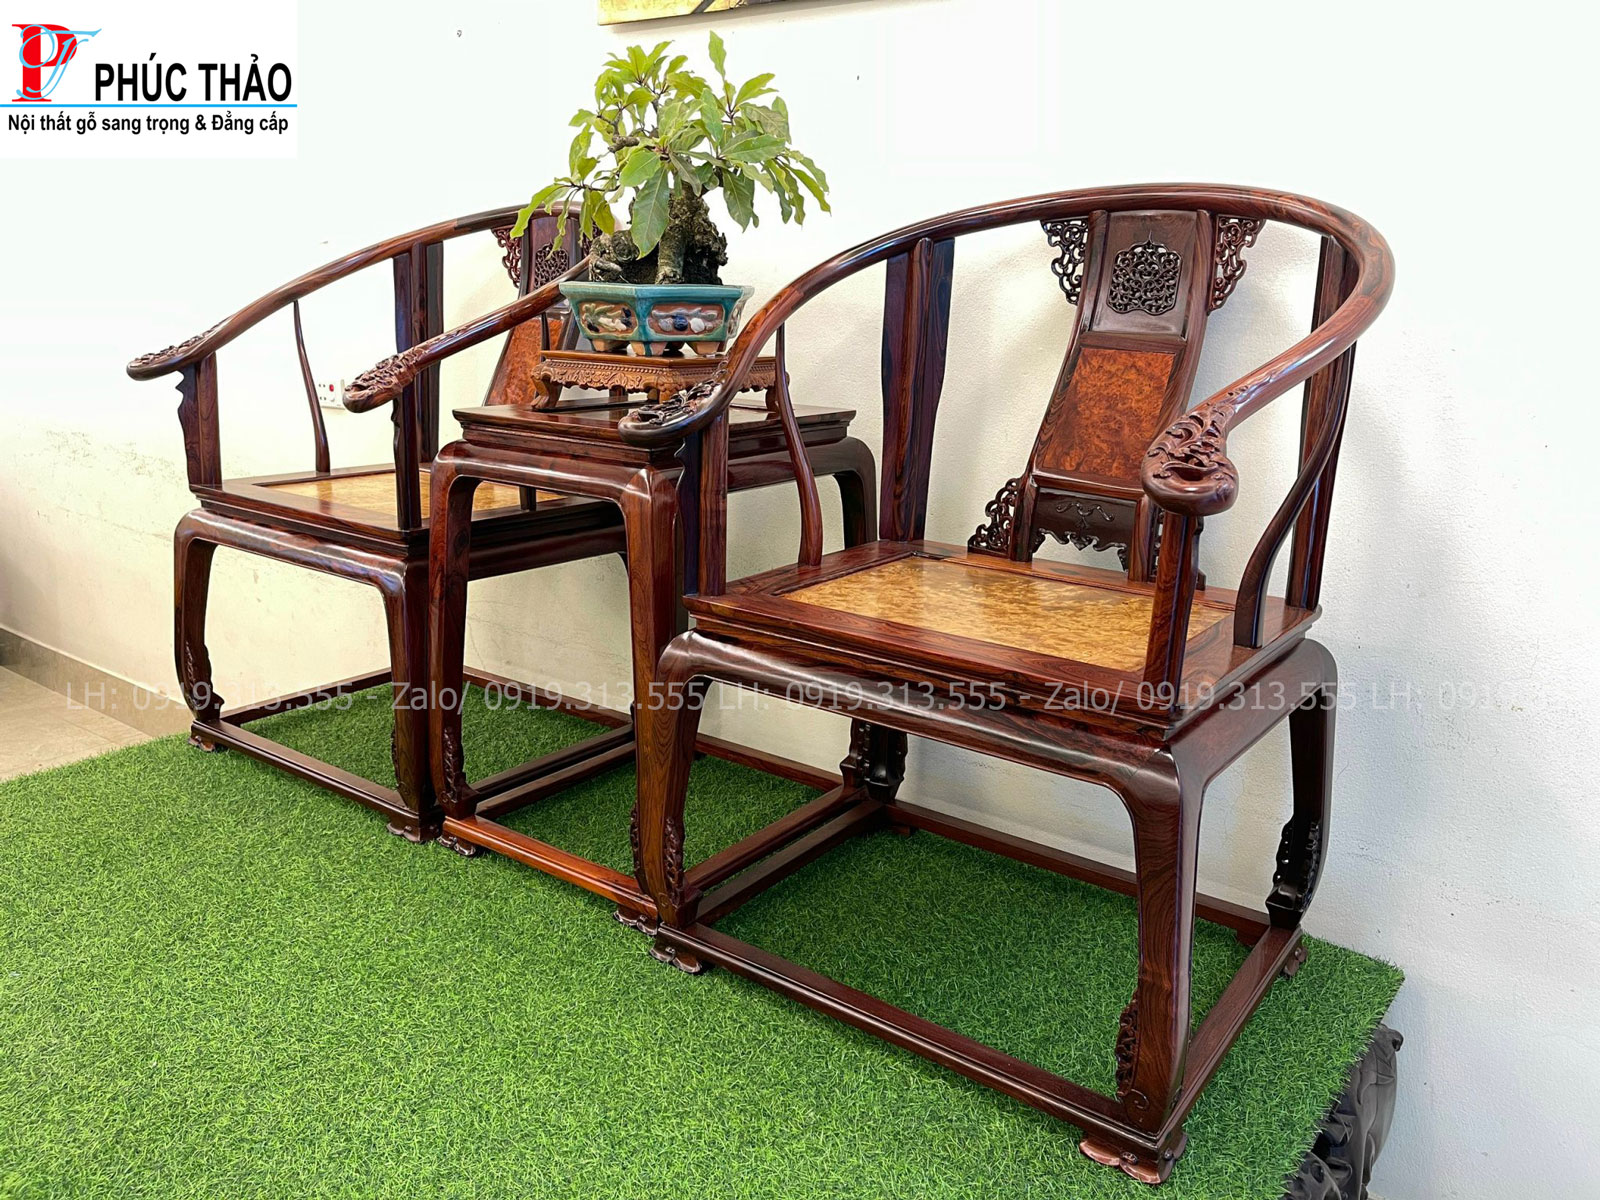 Đồ gỗ Phúc Thảo cơ sở sản xuất bàn ghế minh đế gỗ cẩm mặt nu hương